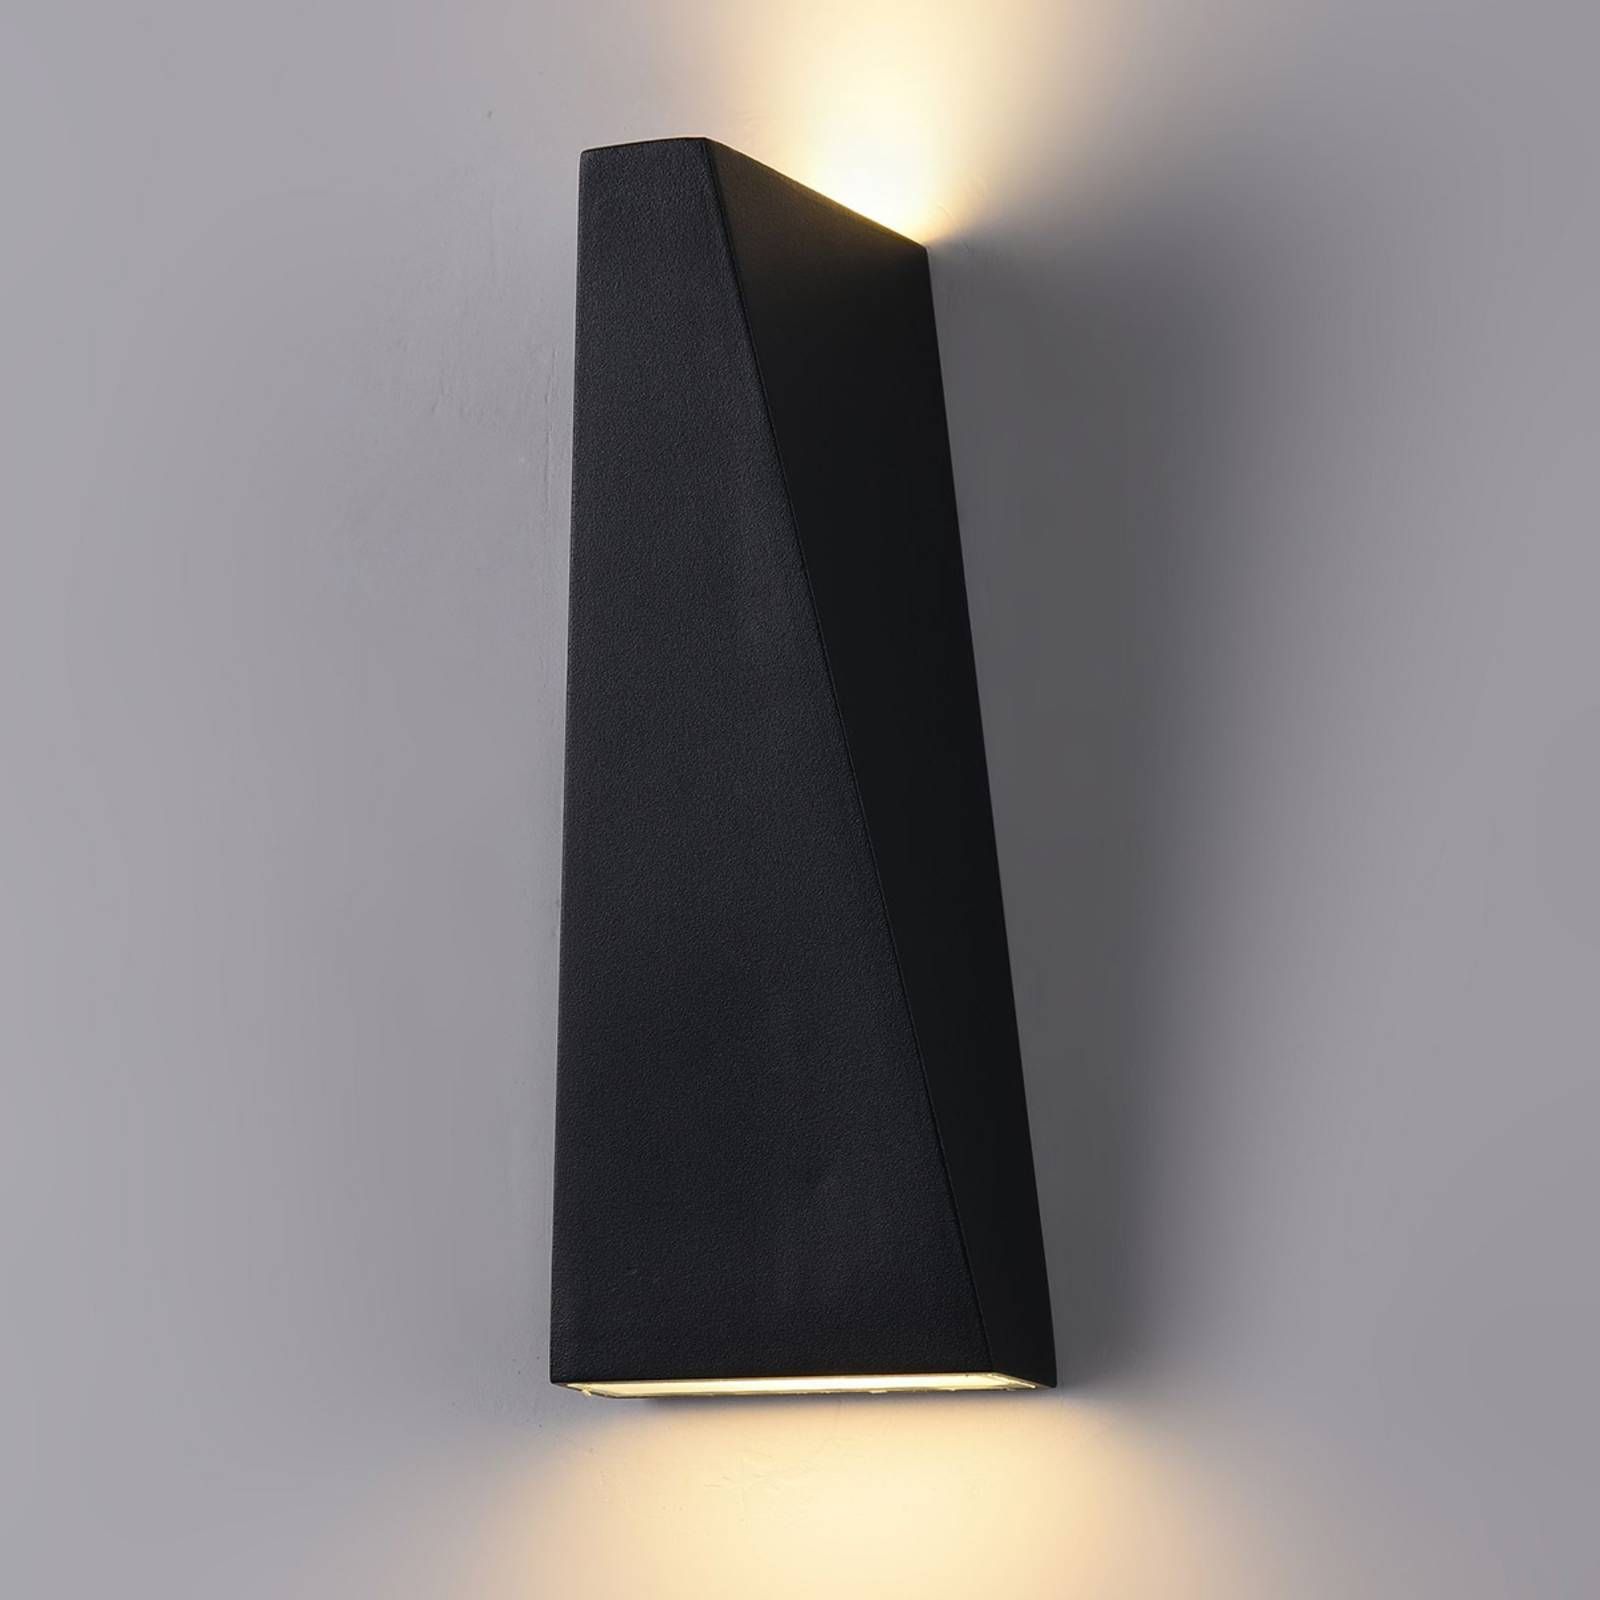 Maytoni Vonkajšie nástenné LED Times Square čierne, kov, akryl, 6W, Energialuokka: G, L: 8.4 cm, K: 21cm